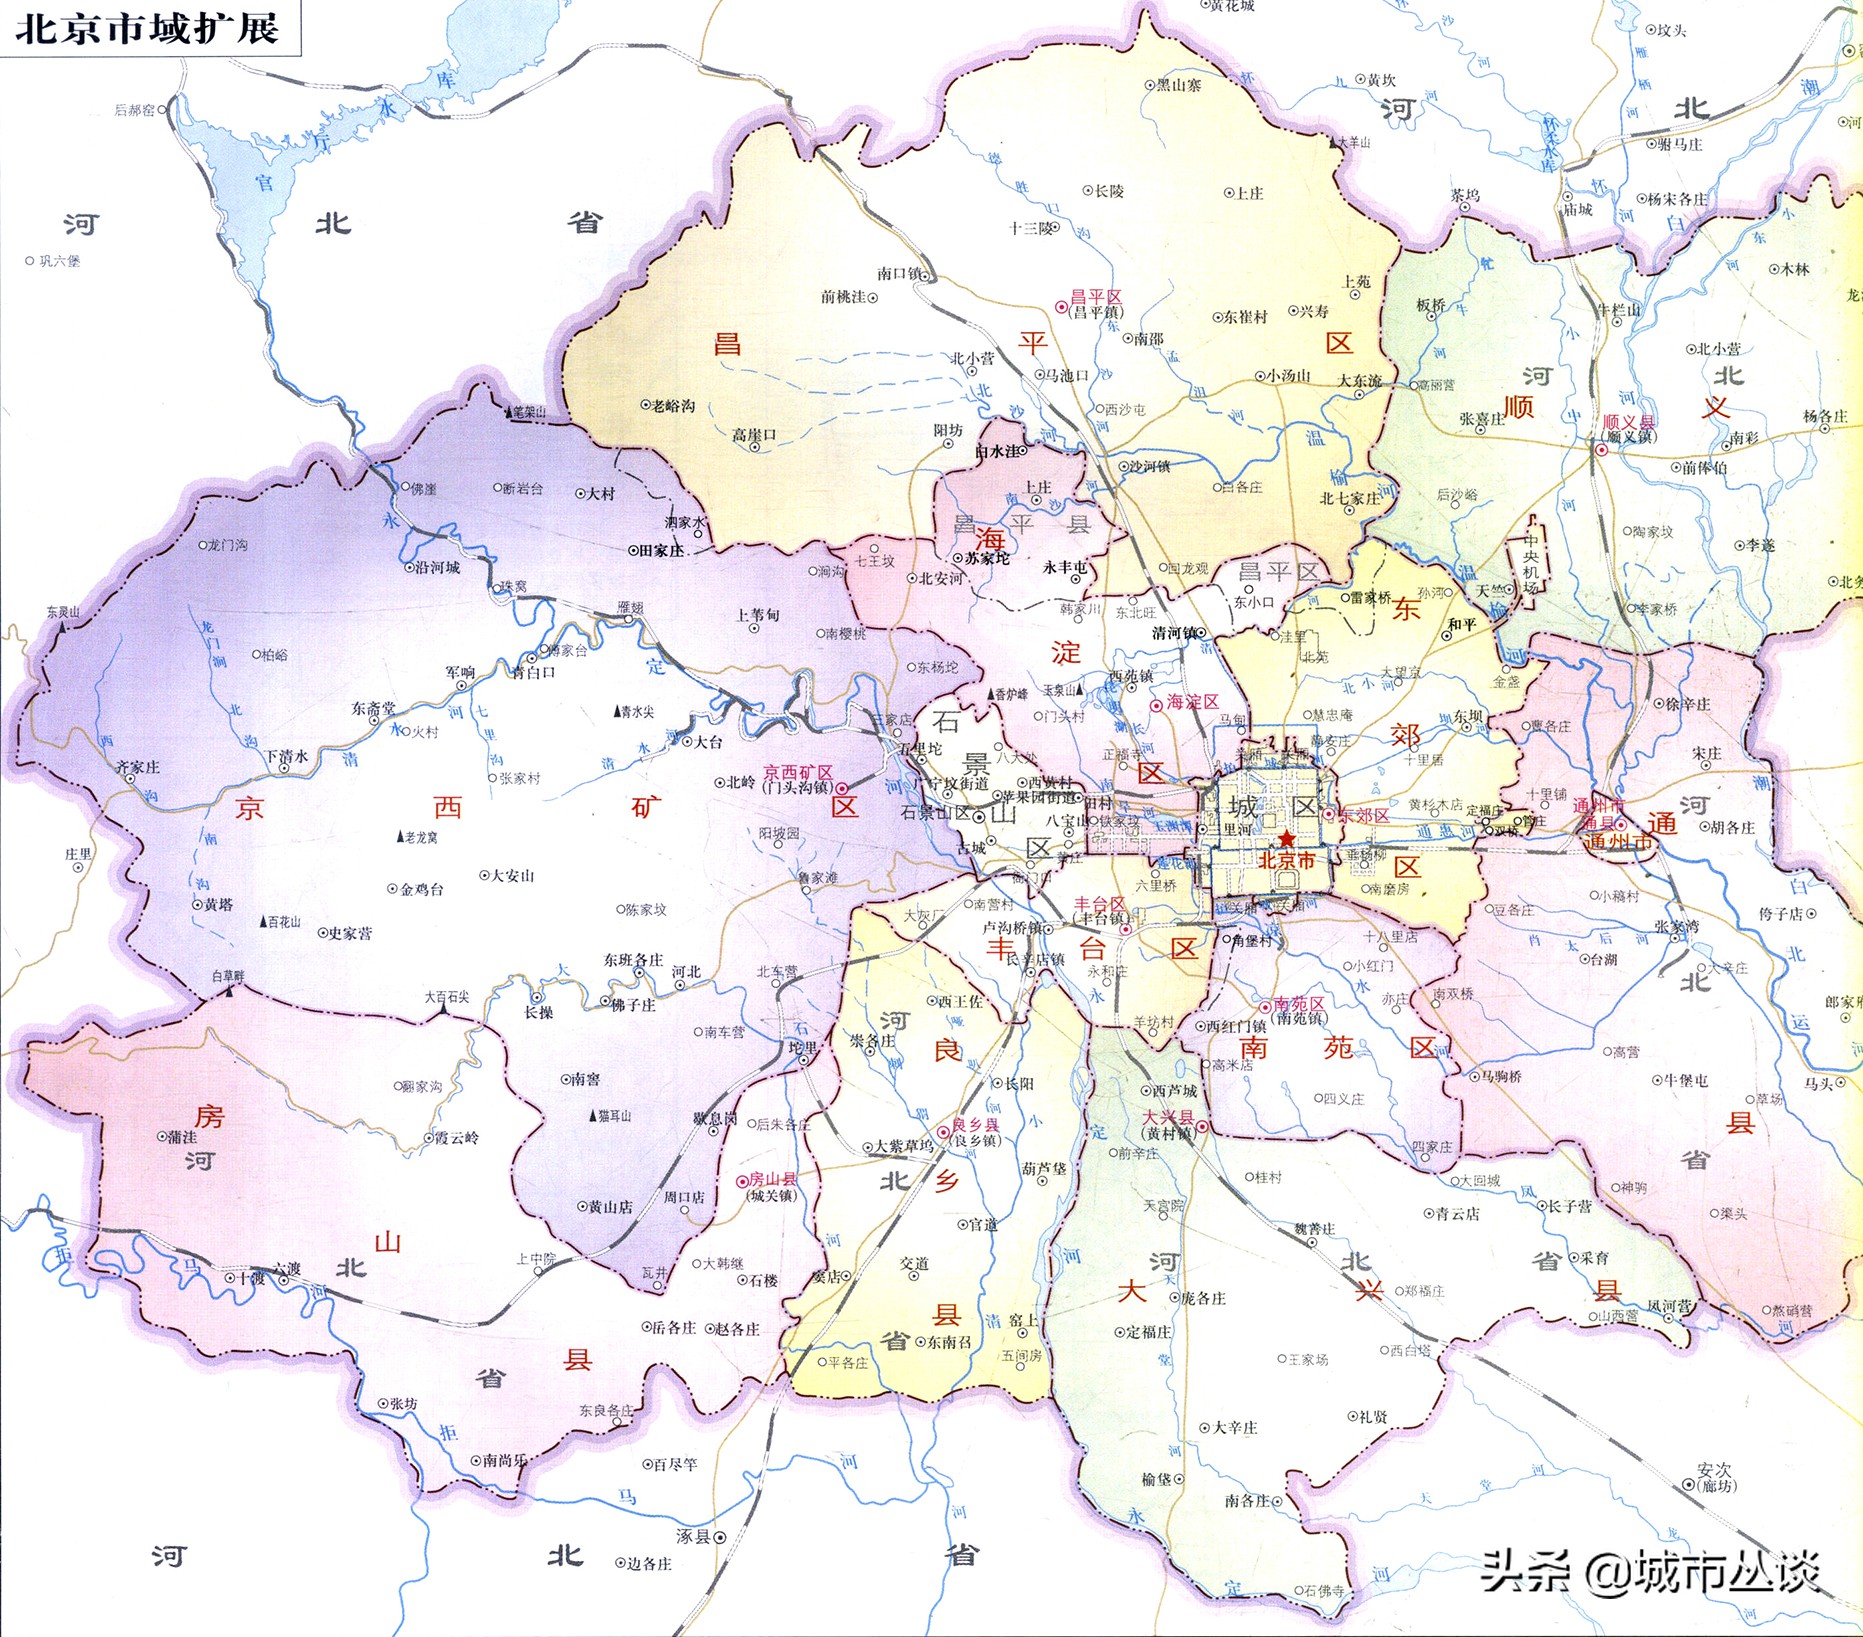 北京市丰台区行政区划变化过程研究